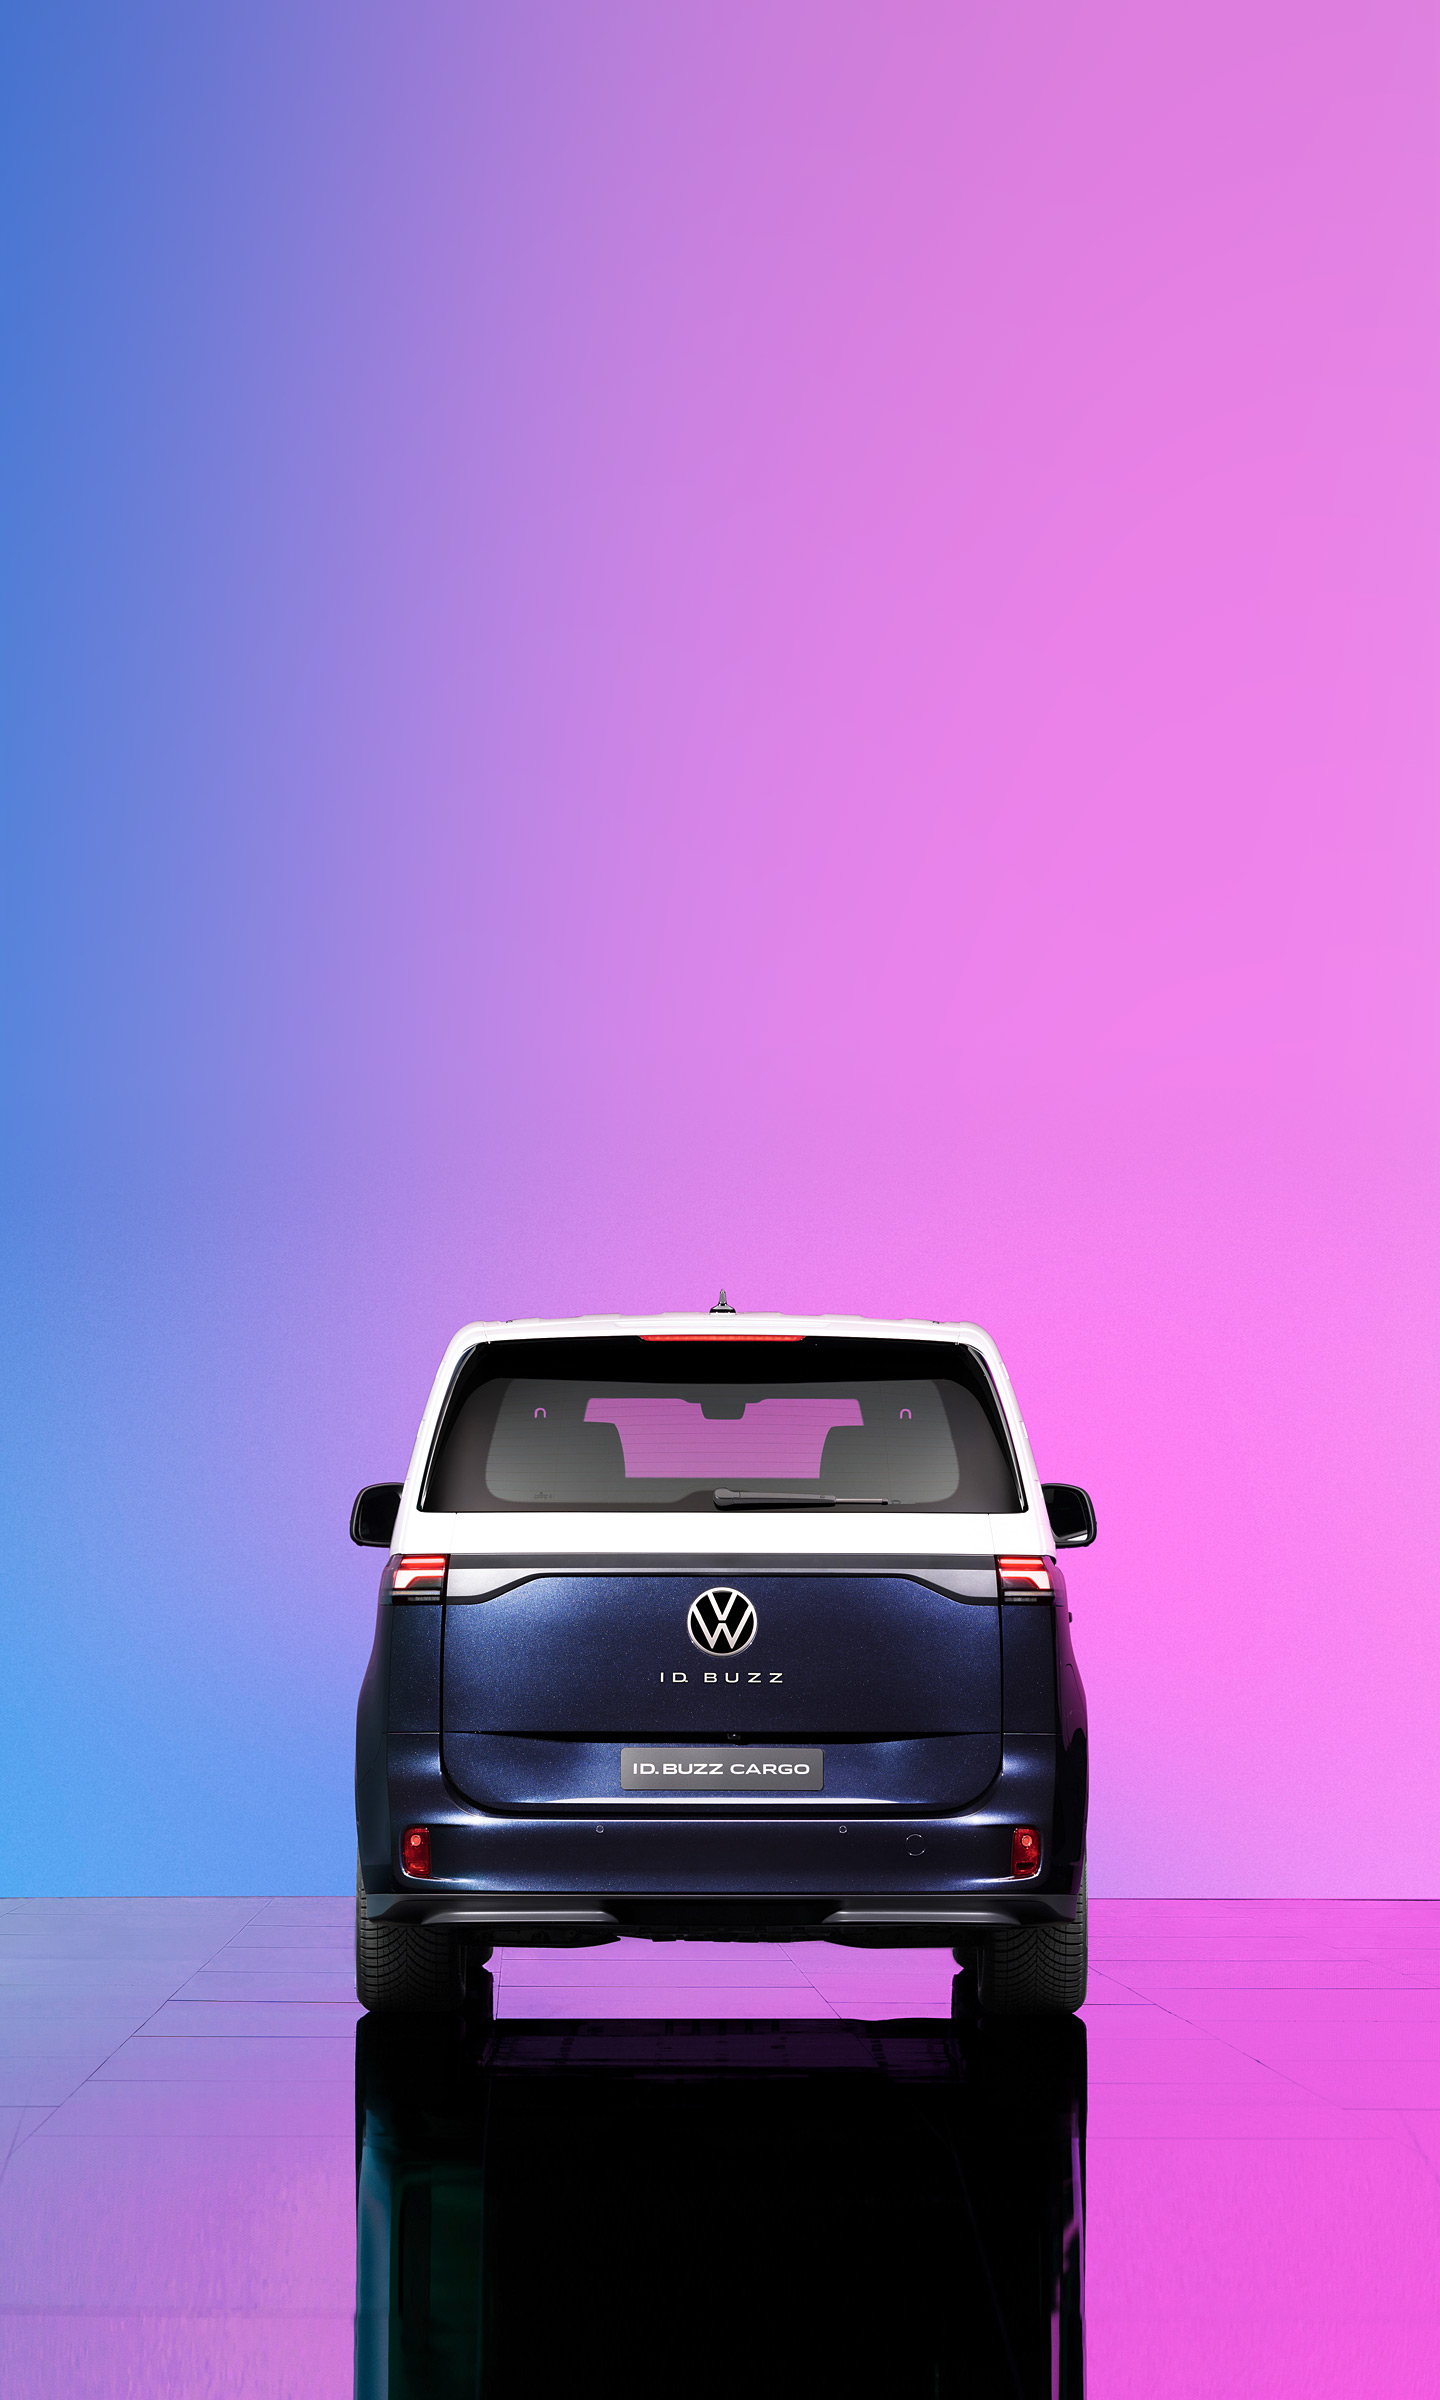  2023 Volkswagen ID Buzz Wallpaper.